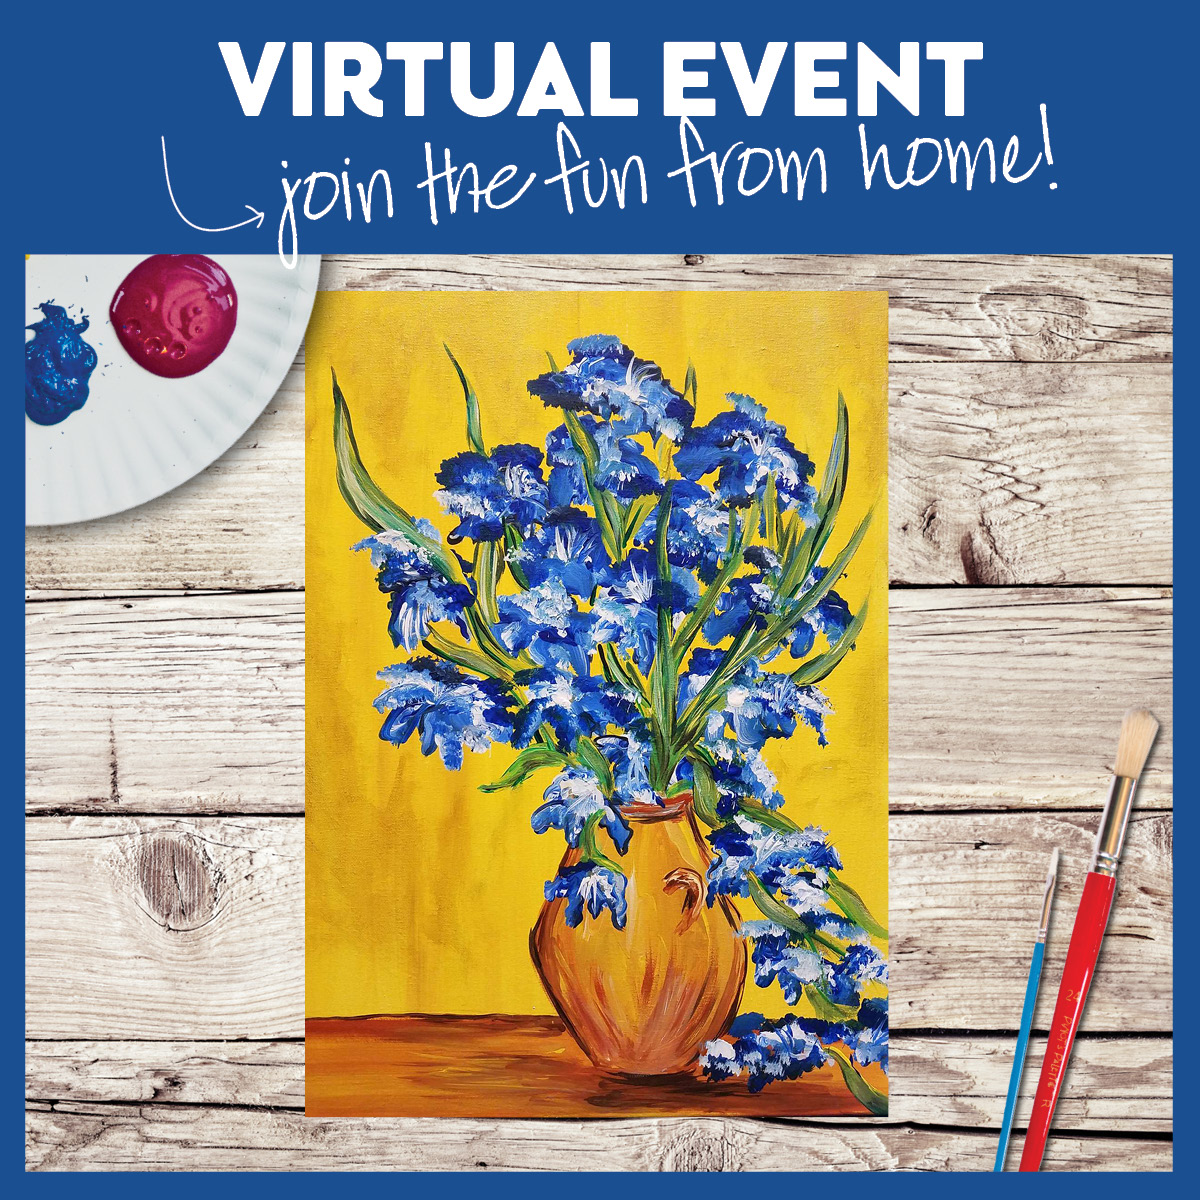 Vincent's Bouquet